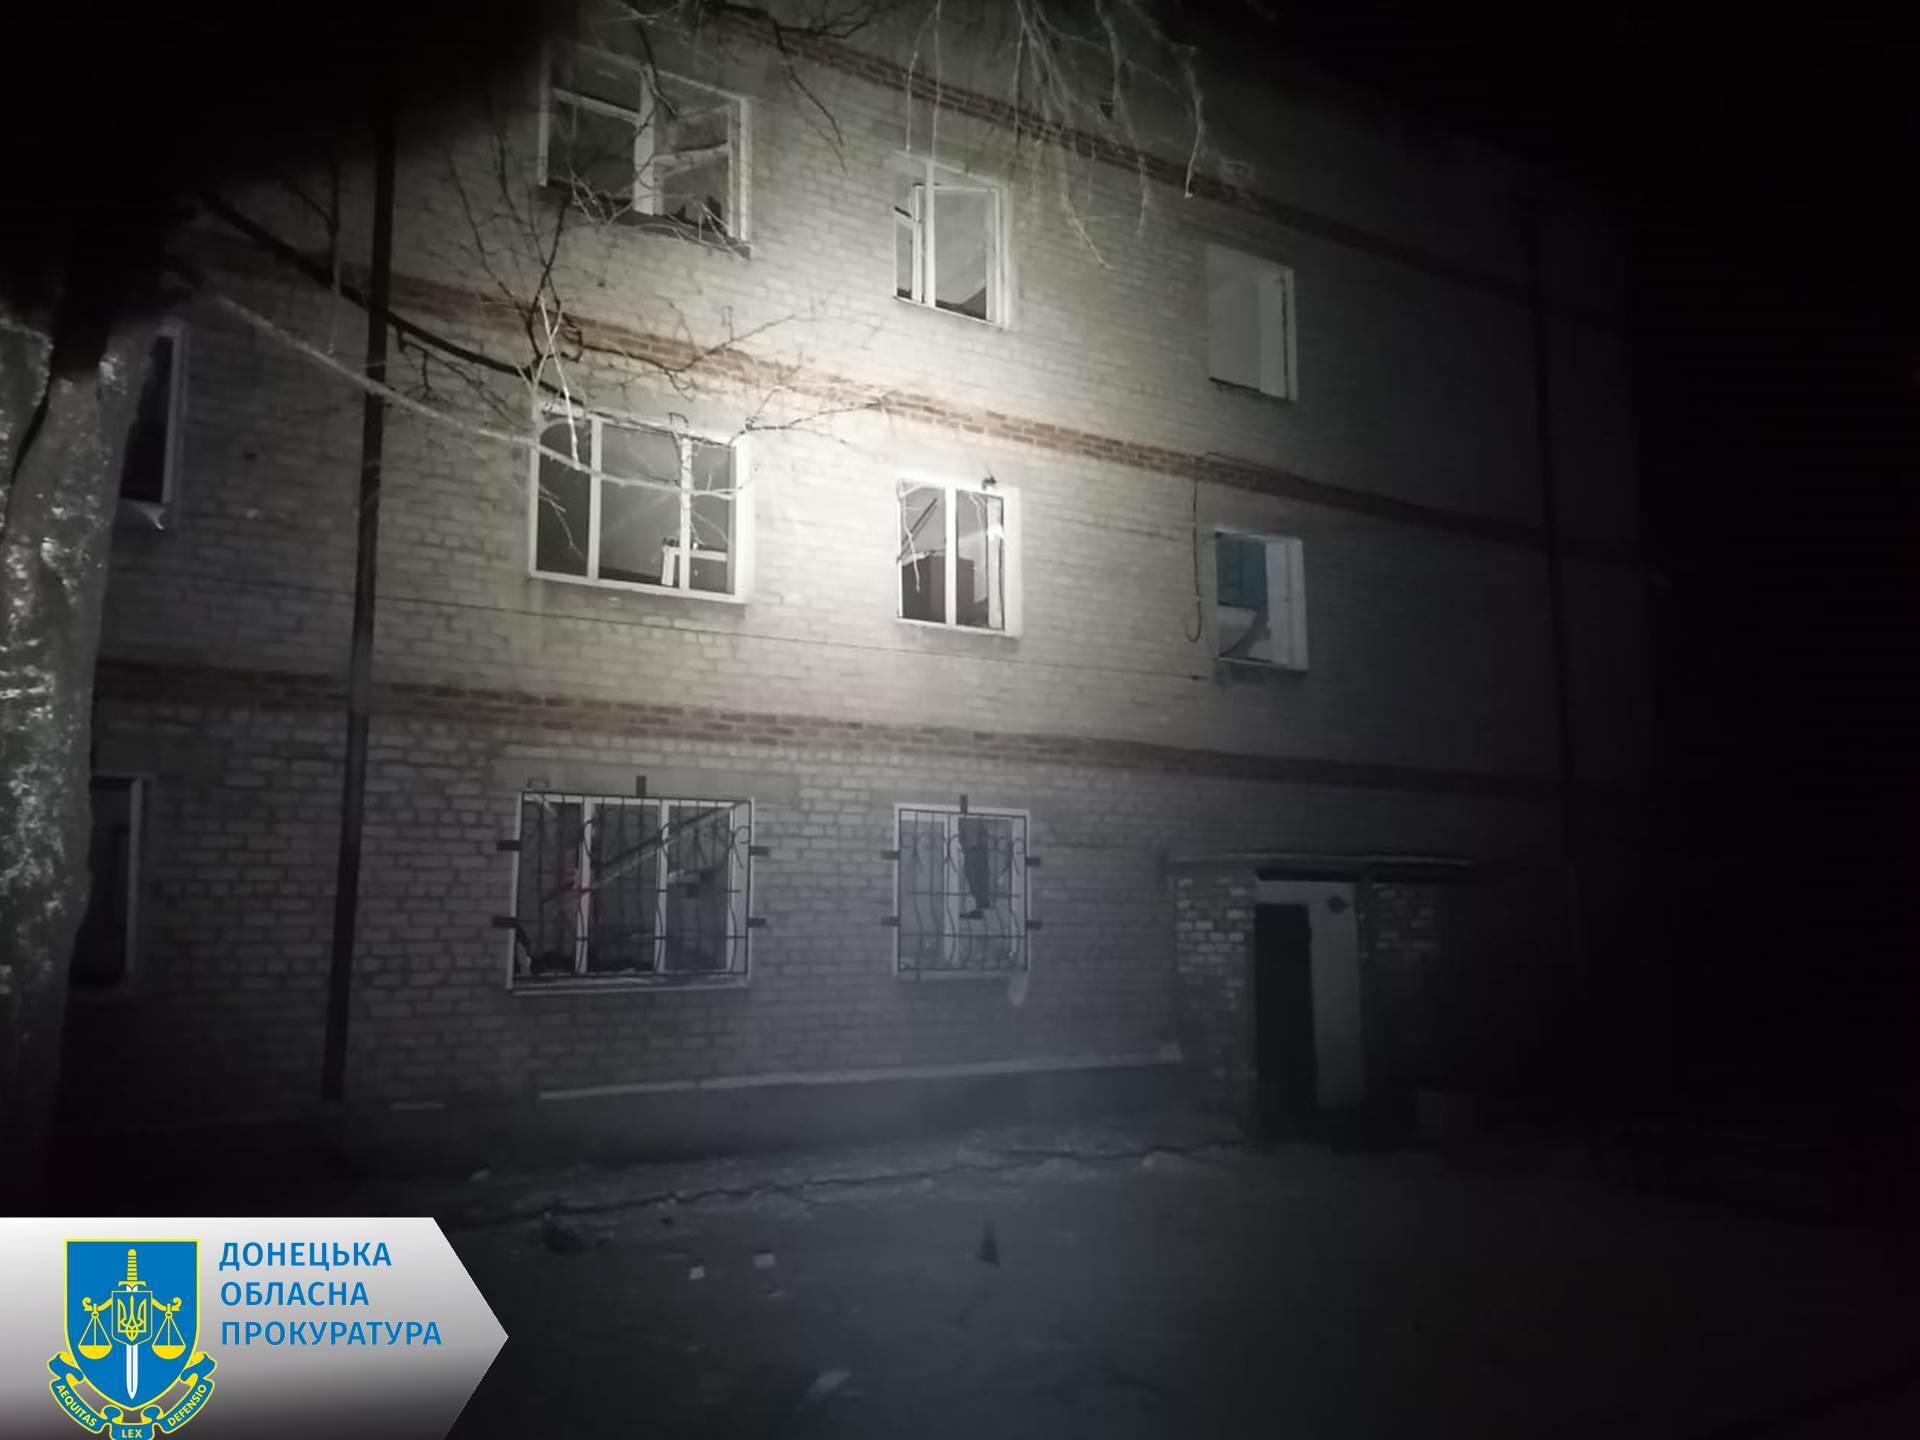 Оккупанты ударили по Нью-Йорку в Донецкой области, есть раненые: под завалами могут оставаться люди. Фото